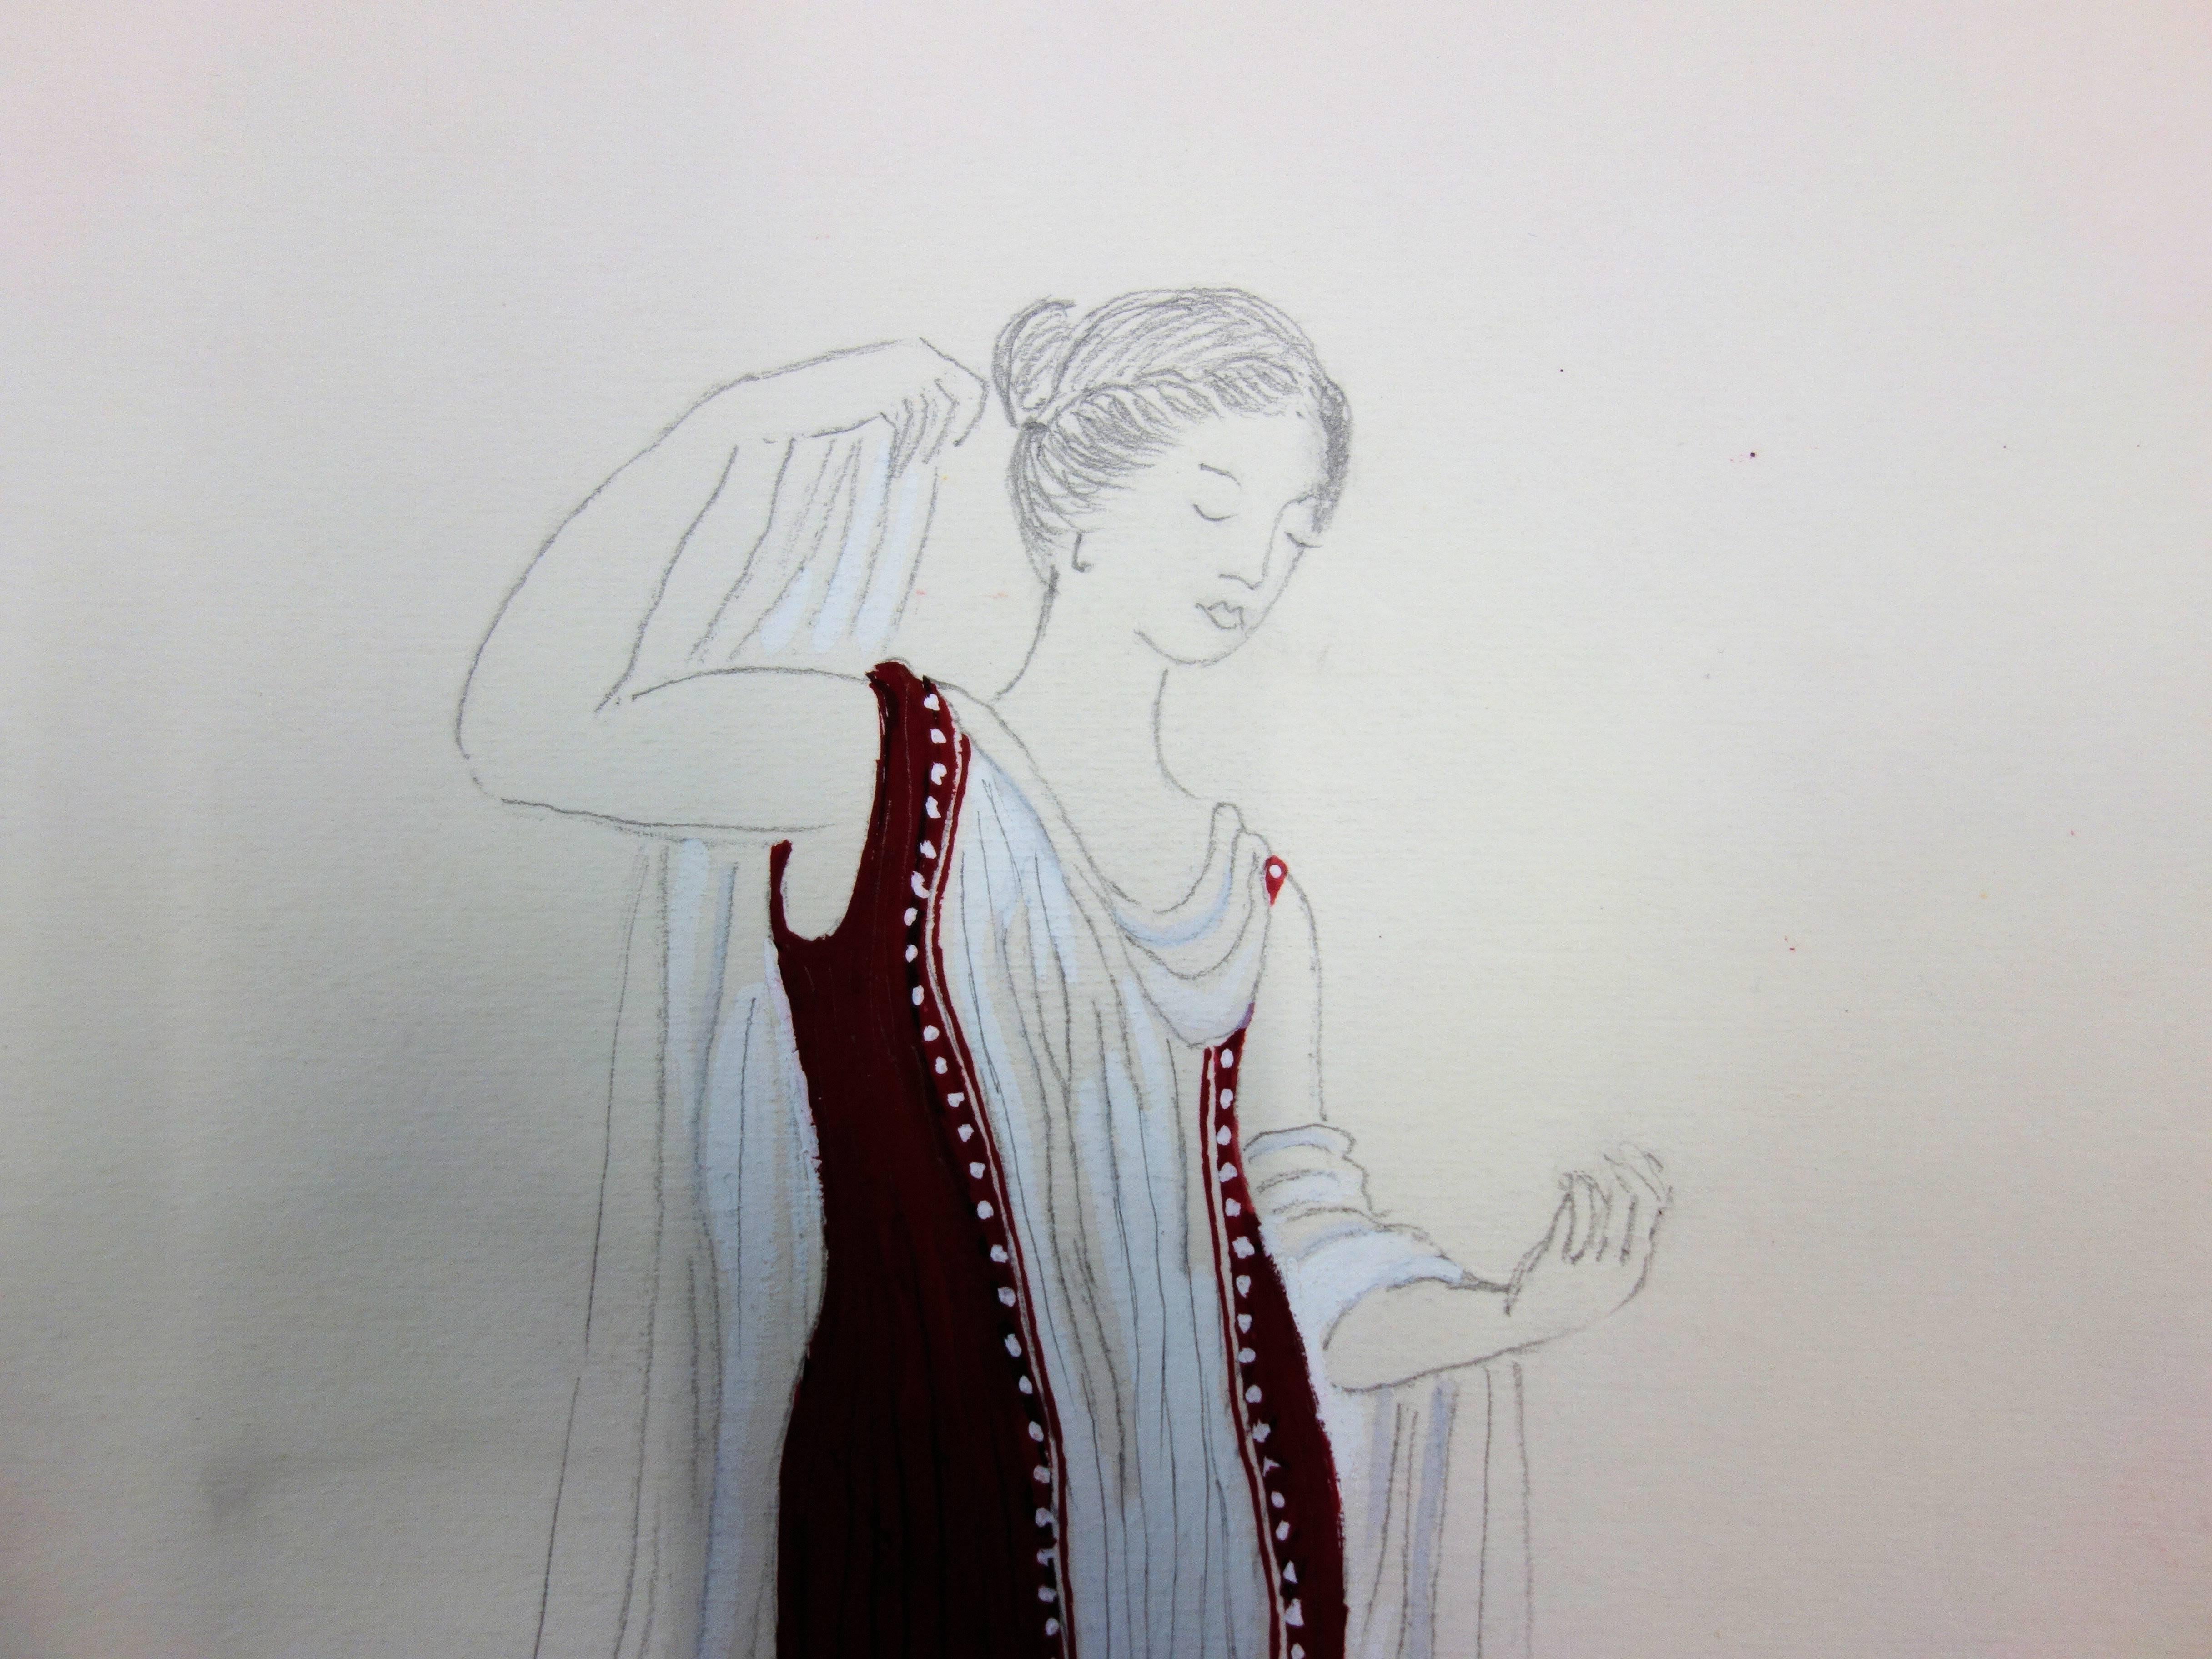 Langes rotes Kleid: Antikes griechisches Kostüm (Antigone) – Original Aquarellzeichnung (Grau), Figurative Art, von Suzanne Lalique